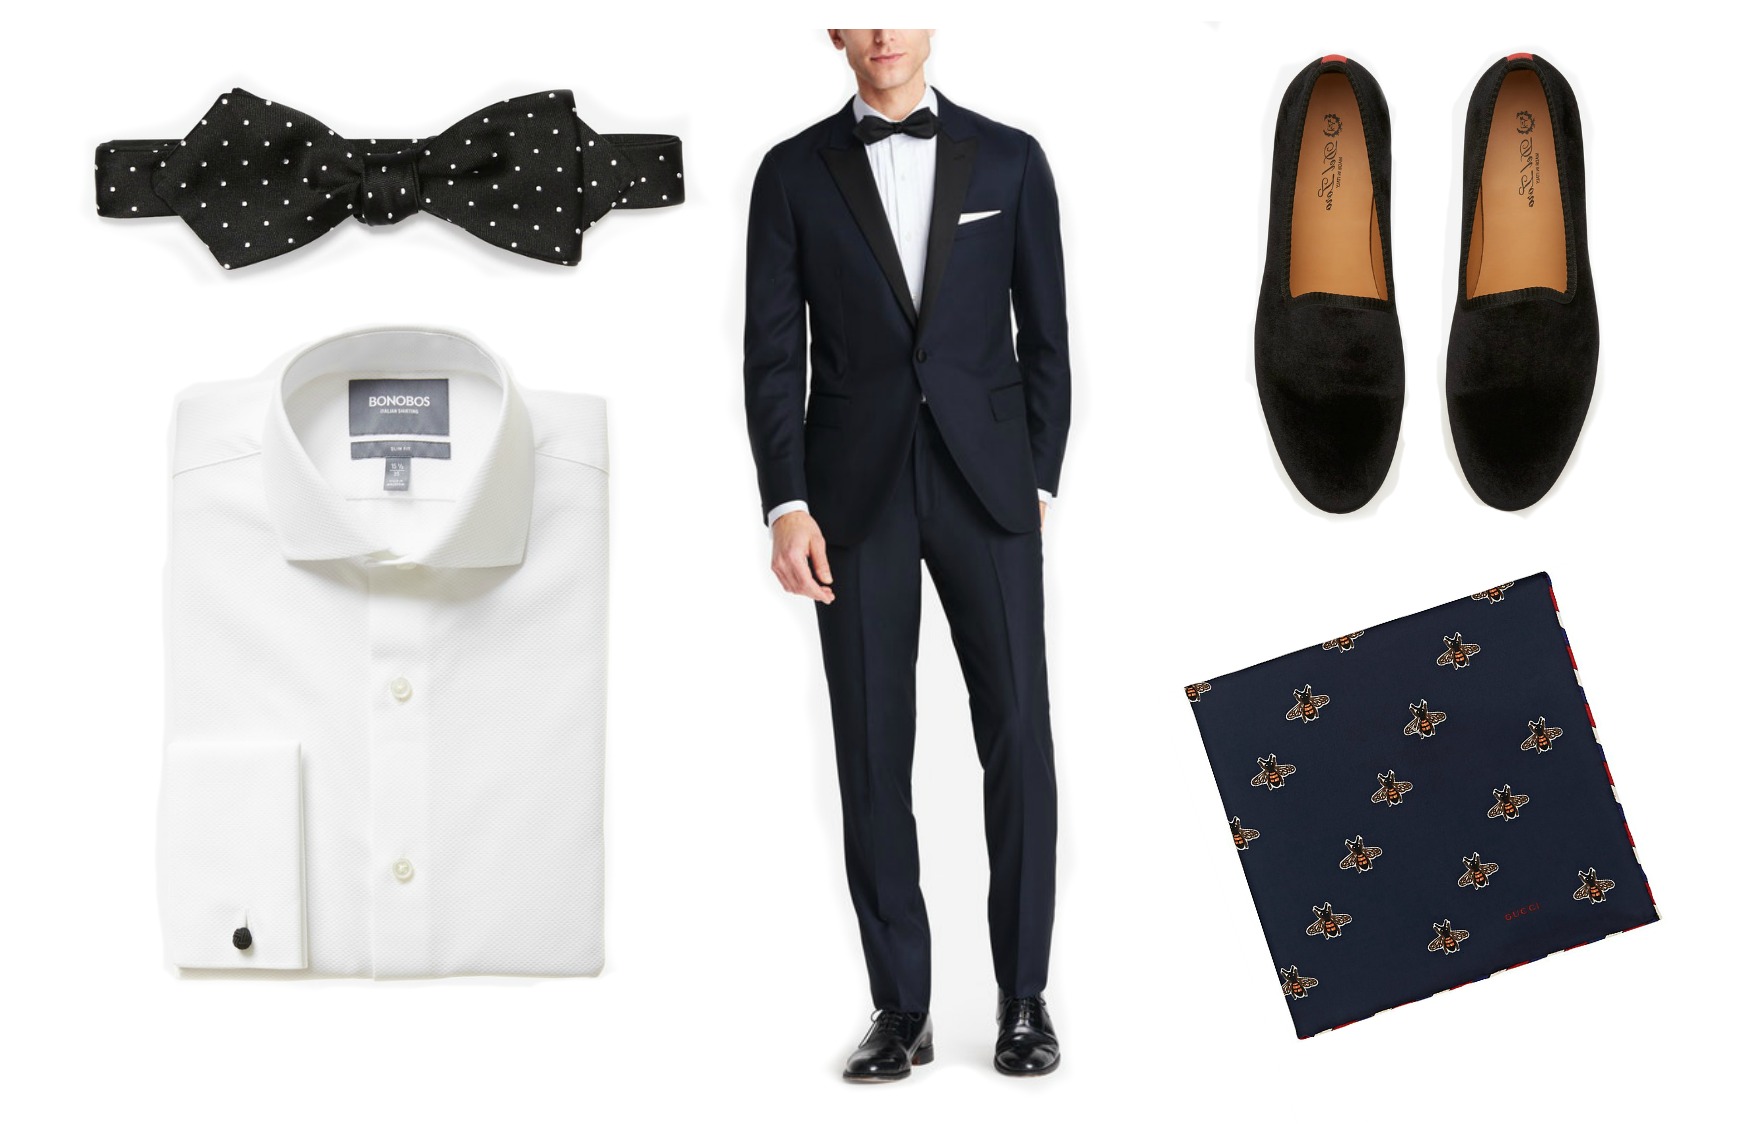 men's wedding dress code black tie optional